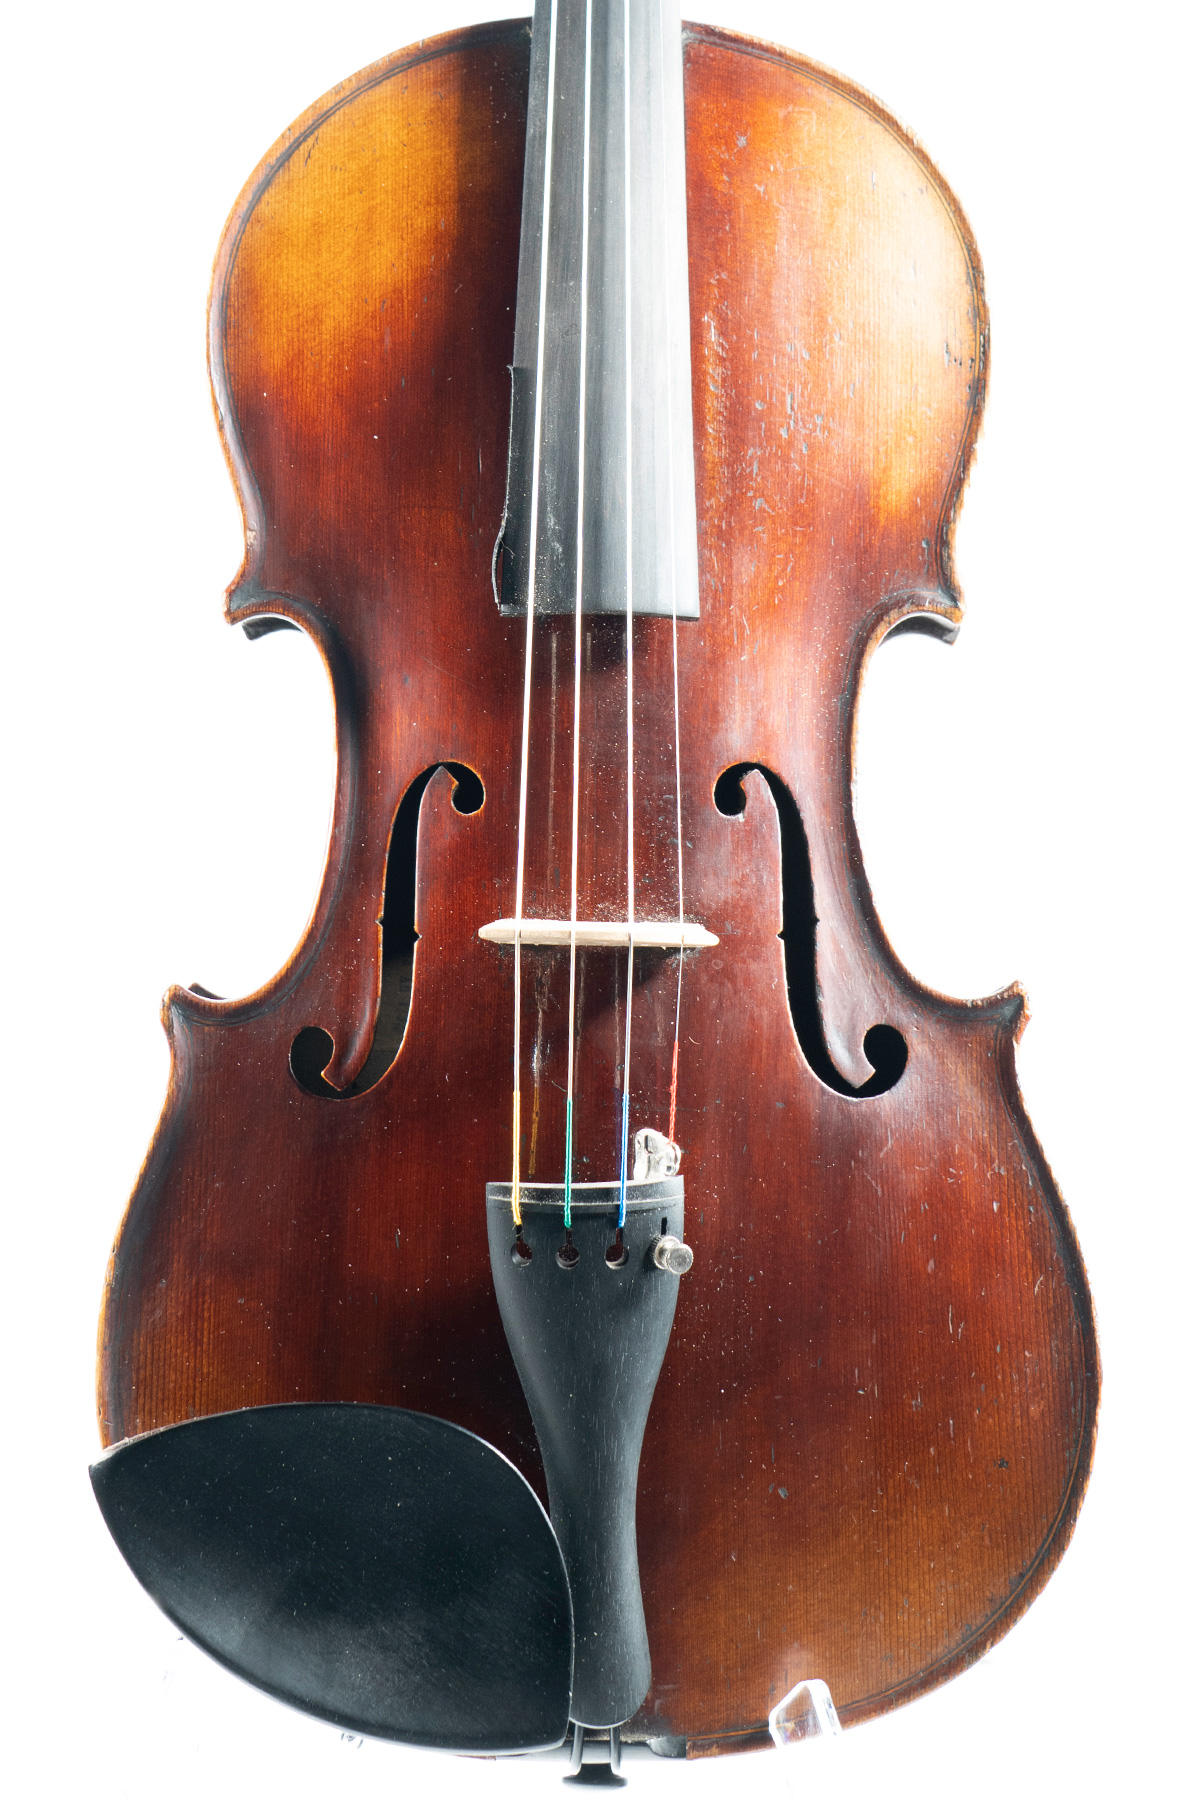 1732 Stradivarius Violin Copy | Miami String Haus Collection